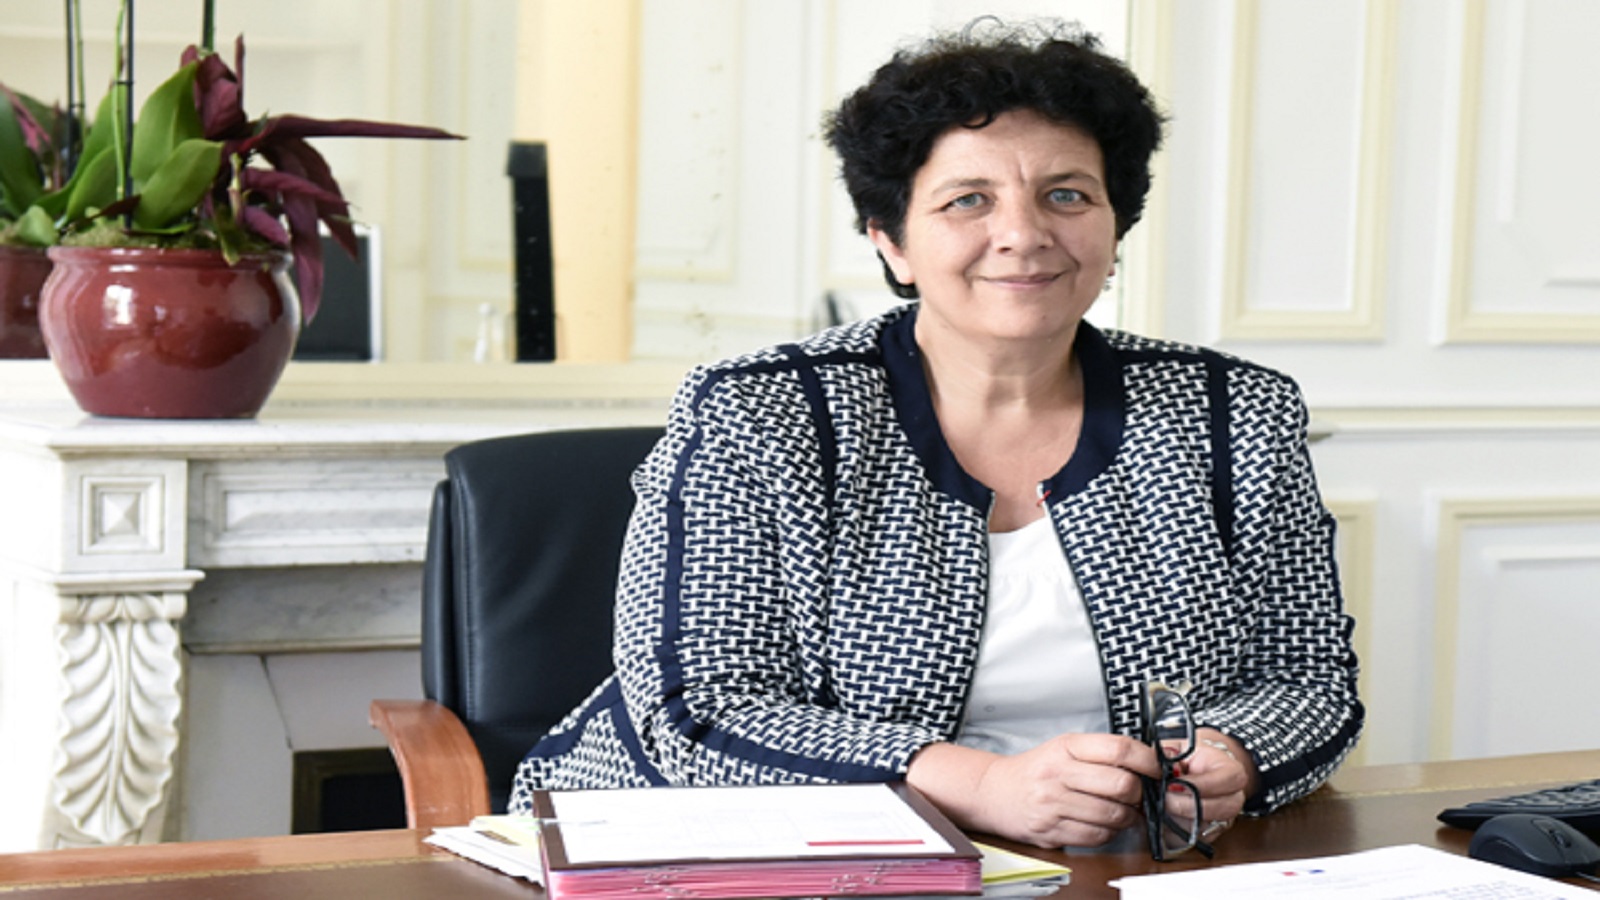 وزيرة التعليم الفرنسية: اليسار الإسلامي "غرغرينا" أكاديمية واجتماعية!